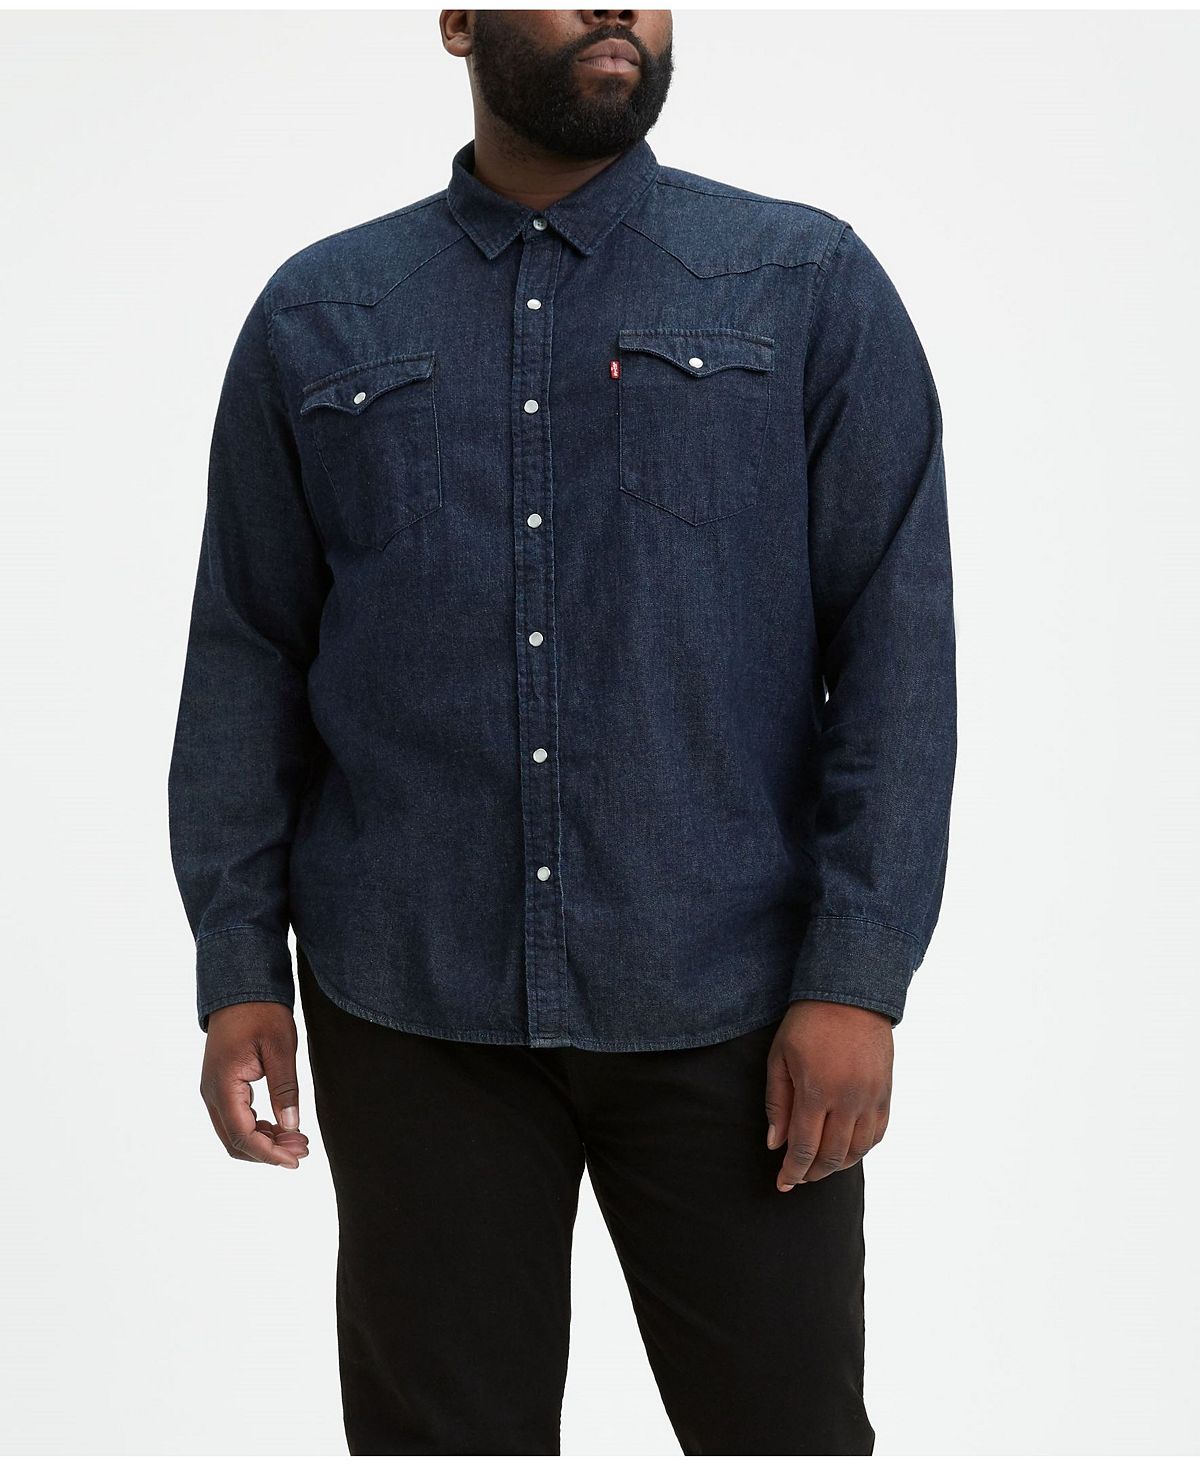 Мужская классическая джинсовая рубашка с длинным рукавом в стиле вестерн Levi's, мульти цена и фото